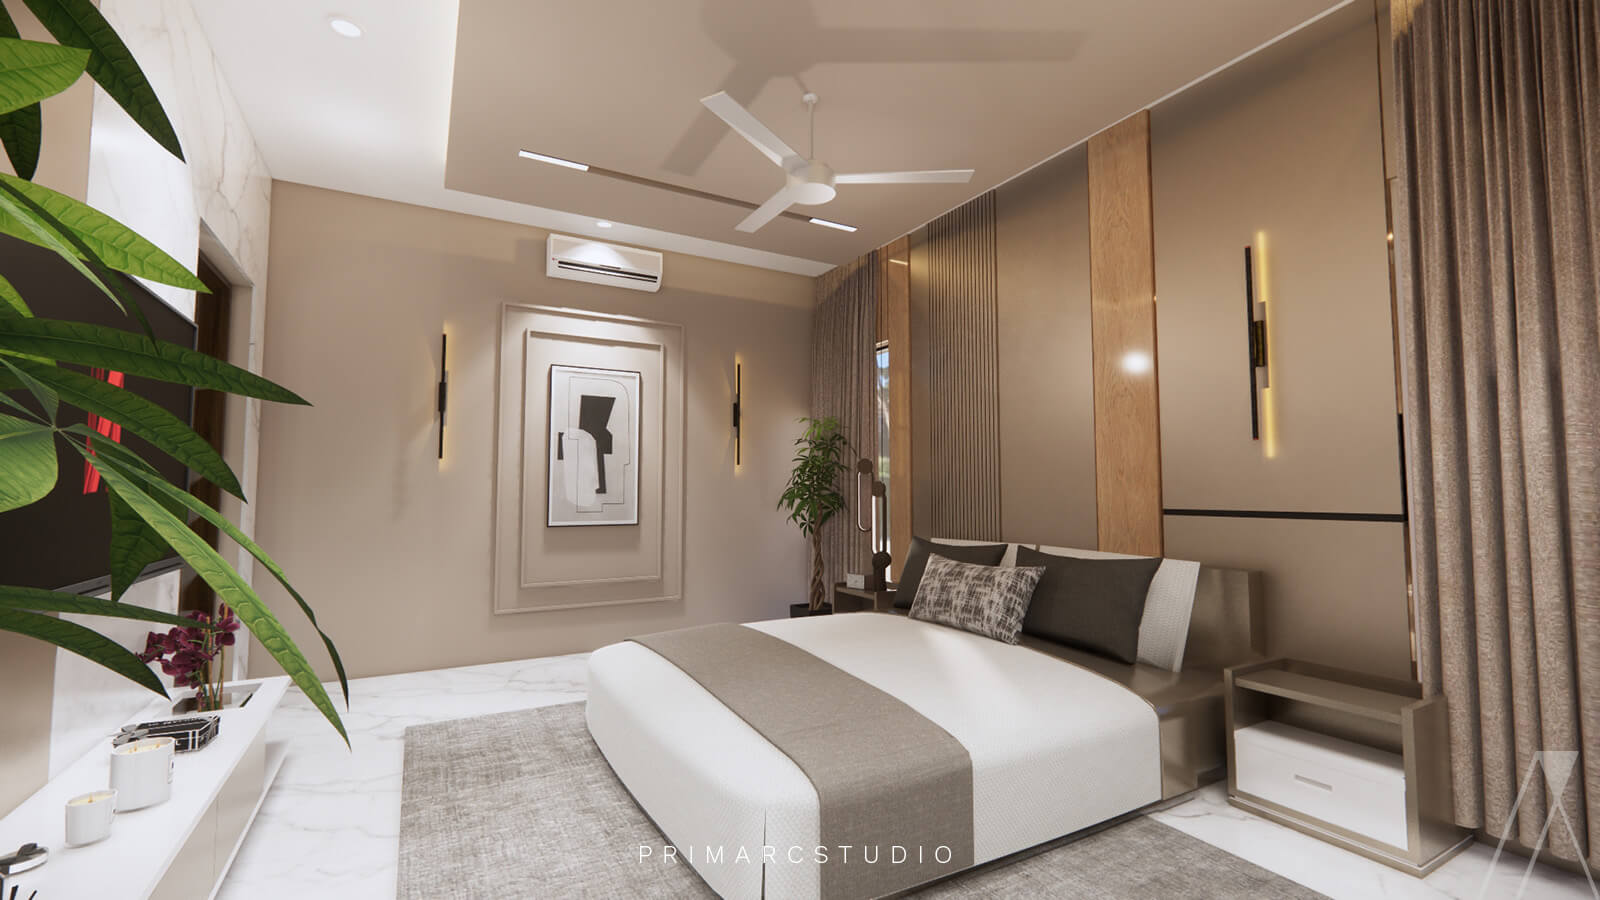 Beige interior design of bedroom